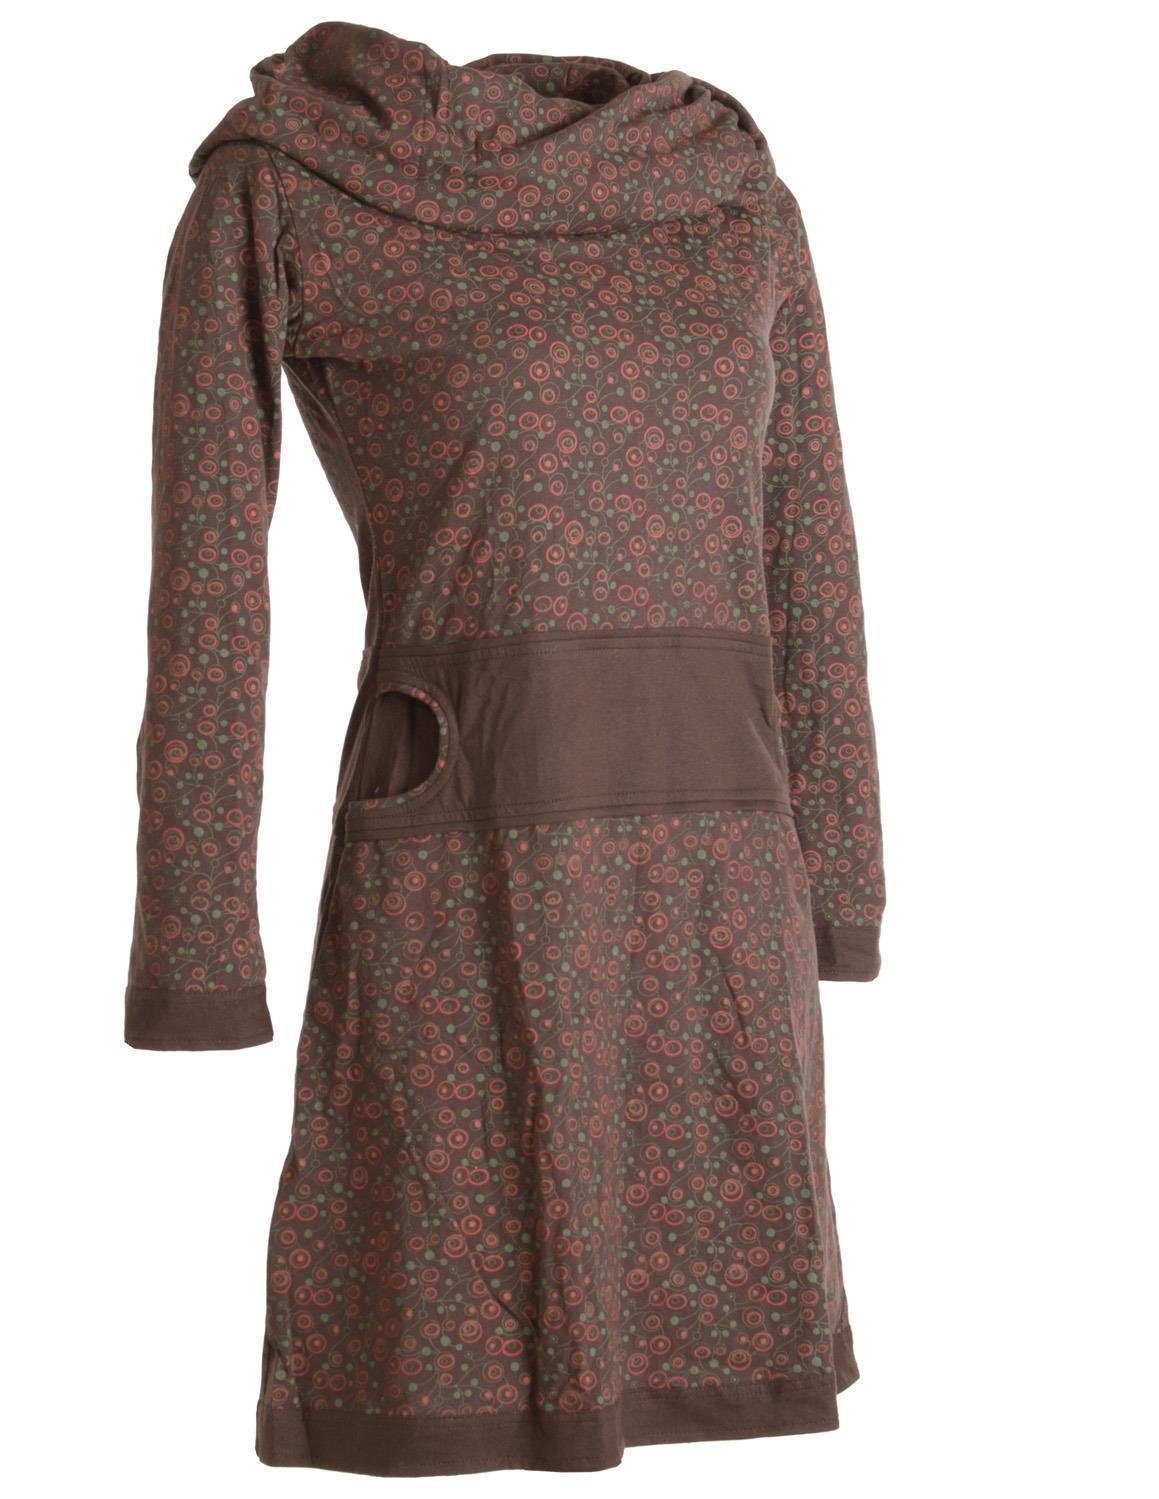 Vishes Jerseykleid Bedrucktes Kleid Hippie Style Goa, Boho, Schalkragen aus Baumwolle Ethno, mit dunkelbraun